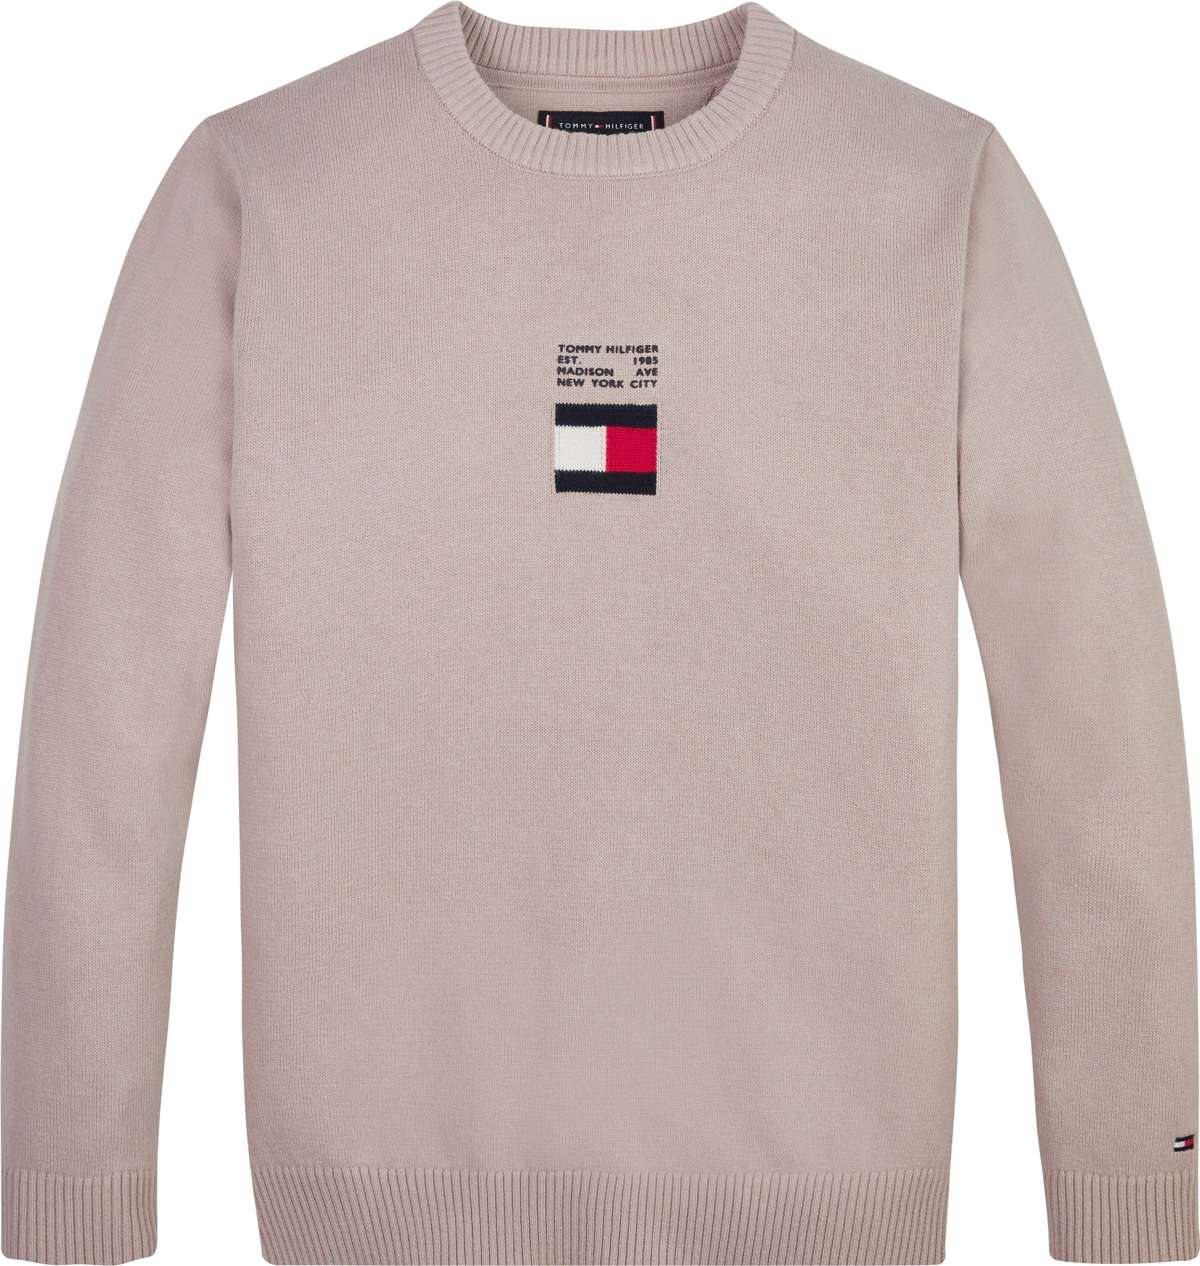 Вязаный свитер из чистого хлопка с логотипом-флажком.